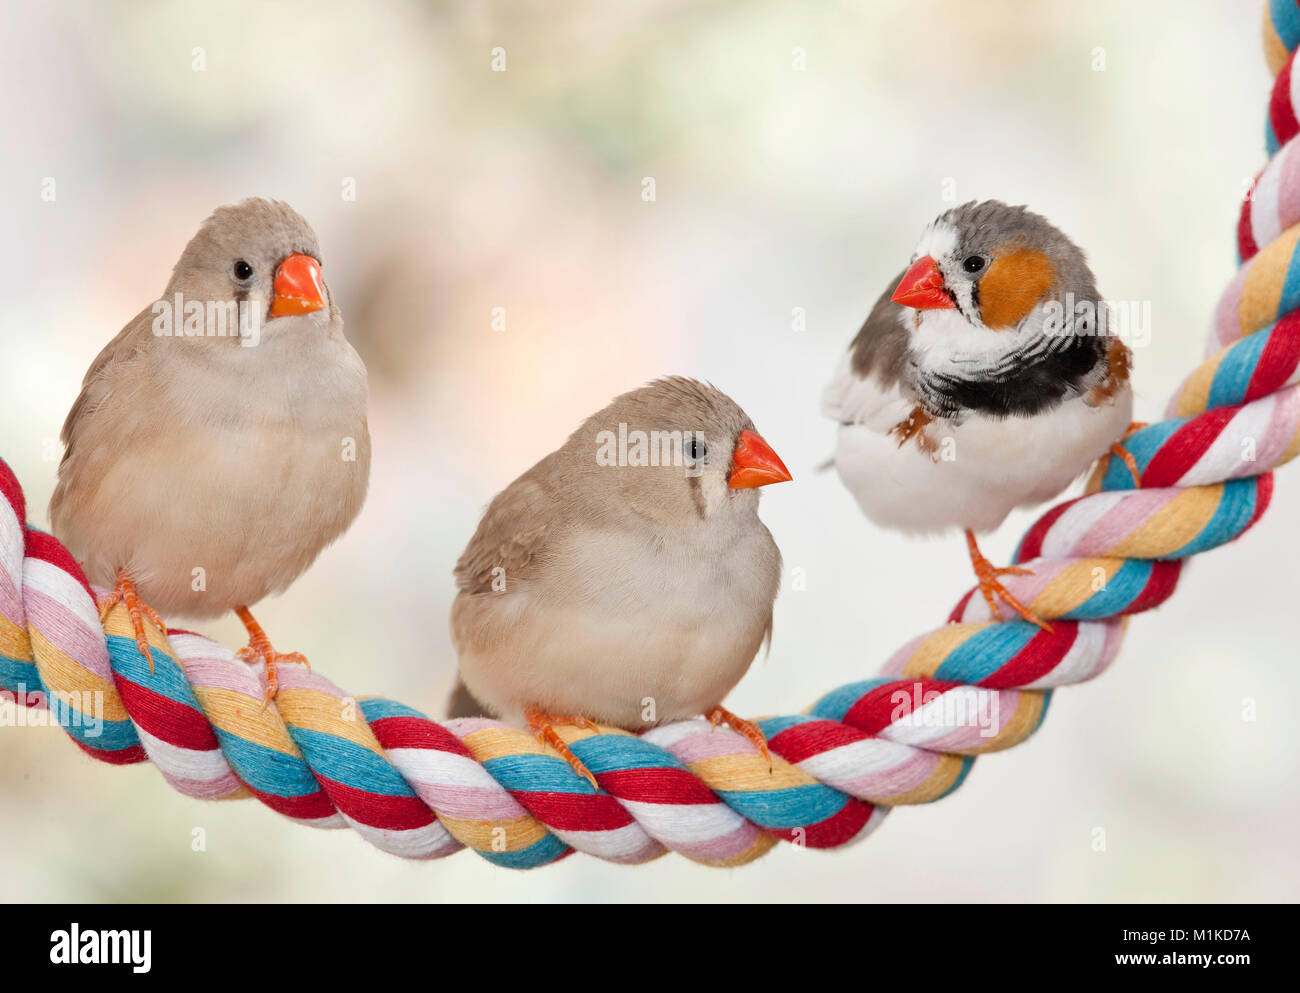 Diamant mandarin (Taeniopygia guttata). Trois oiseaux posés sur une corde. Allemagne Banque D'Images